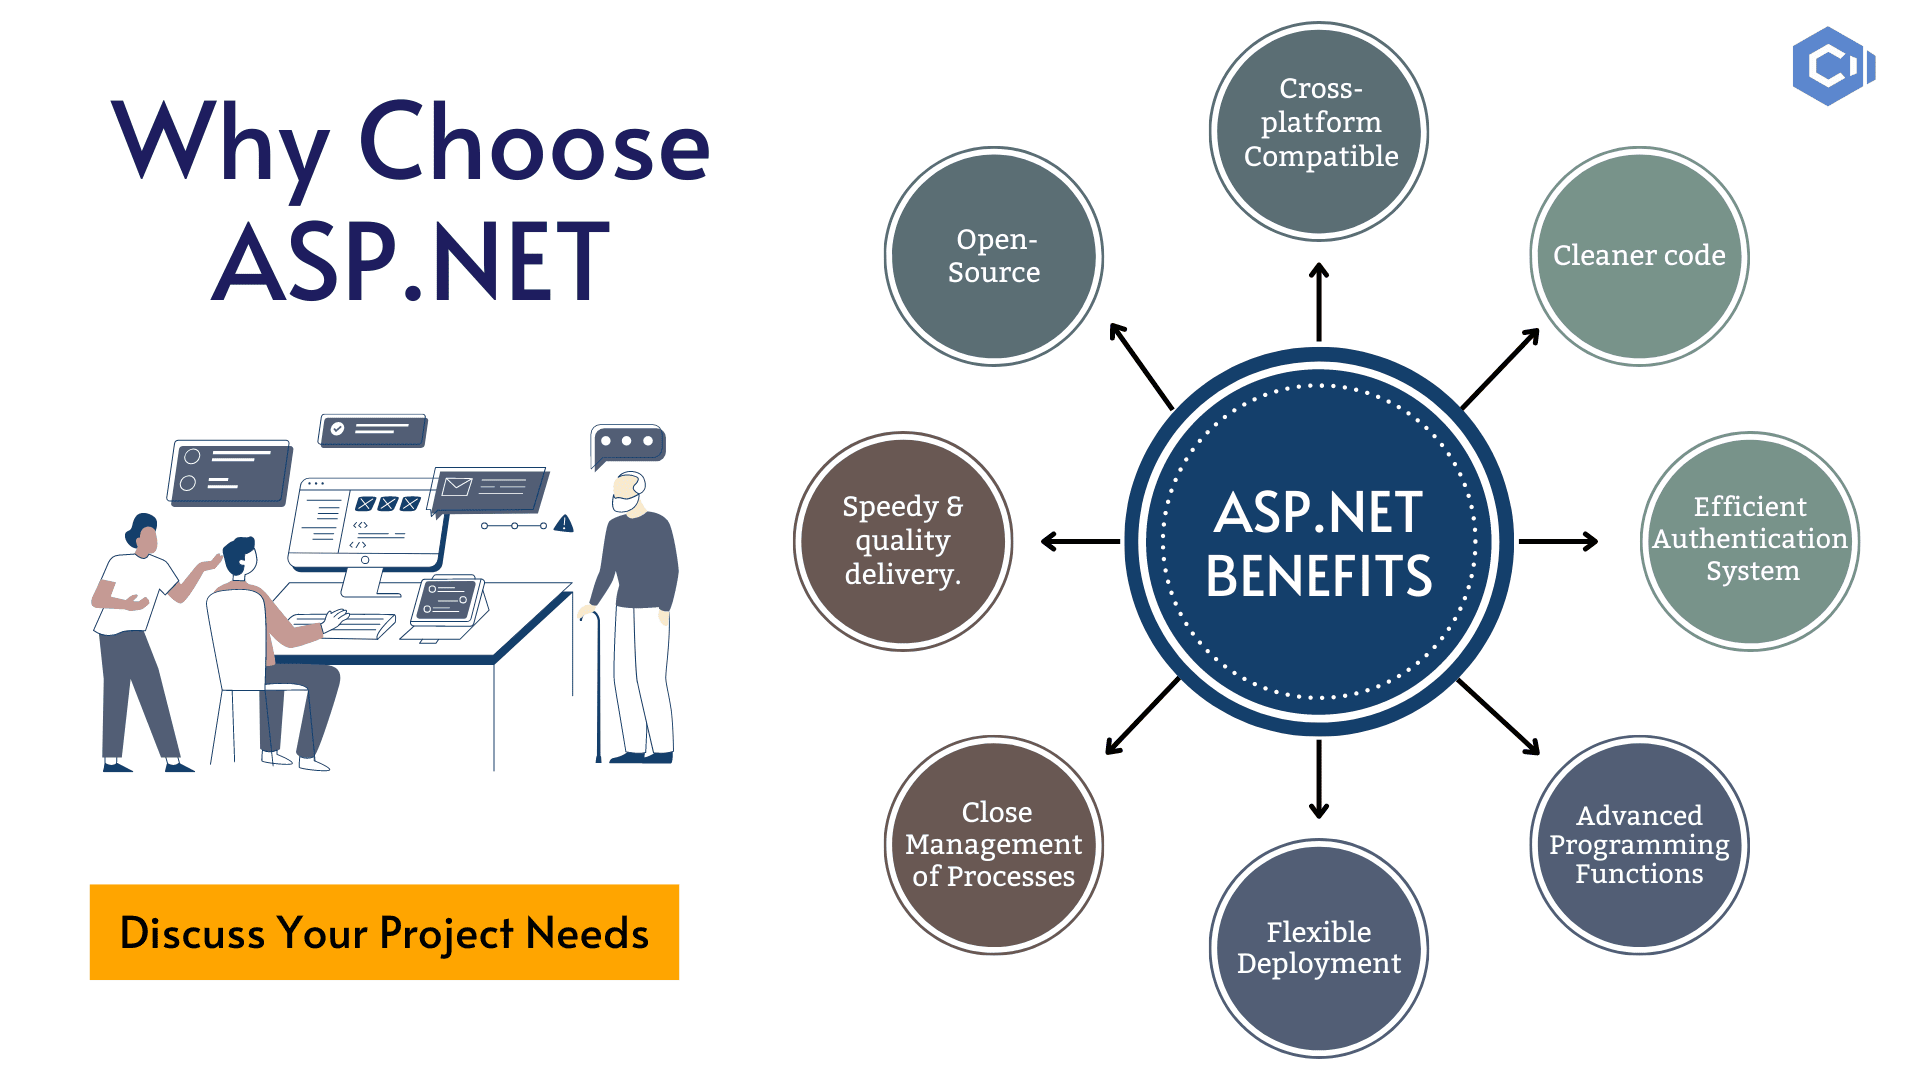 ASP.NET benefits 